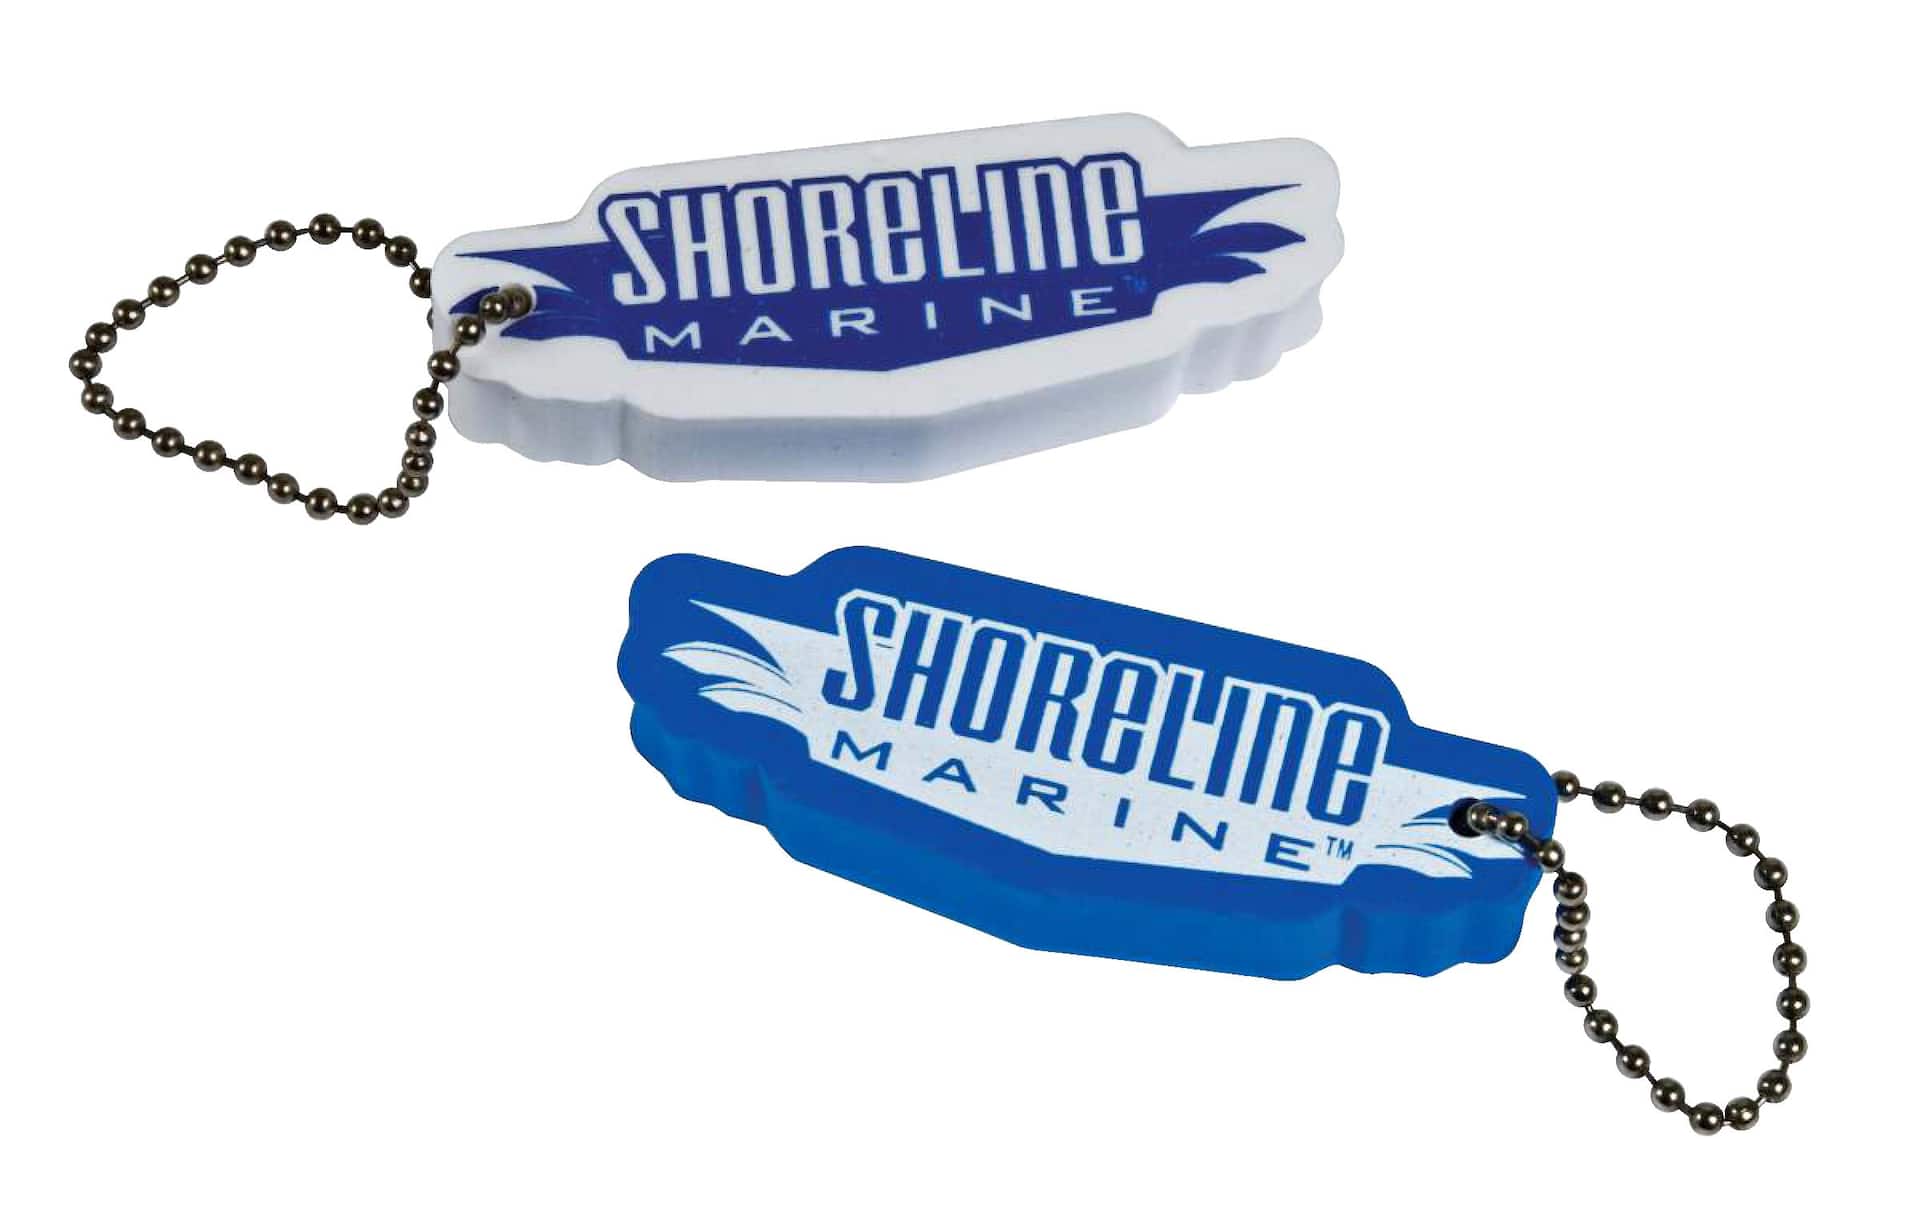 Cork Floating Keyring - Floating Cork Key Ring | Keychain & Enamel Pins  Promotional Products Manufacturer | Jin Sheu